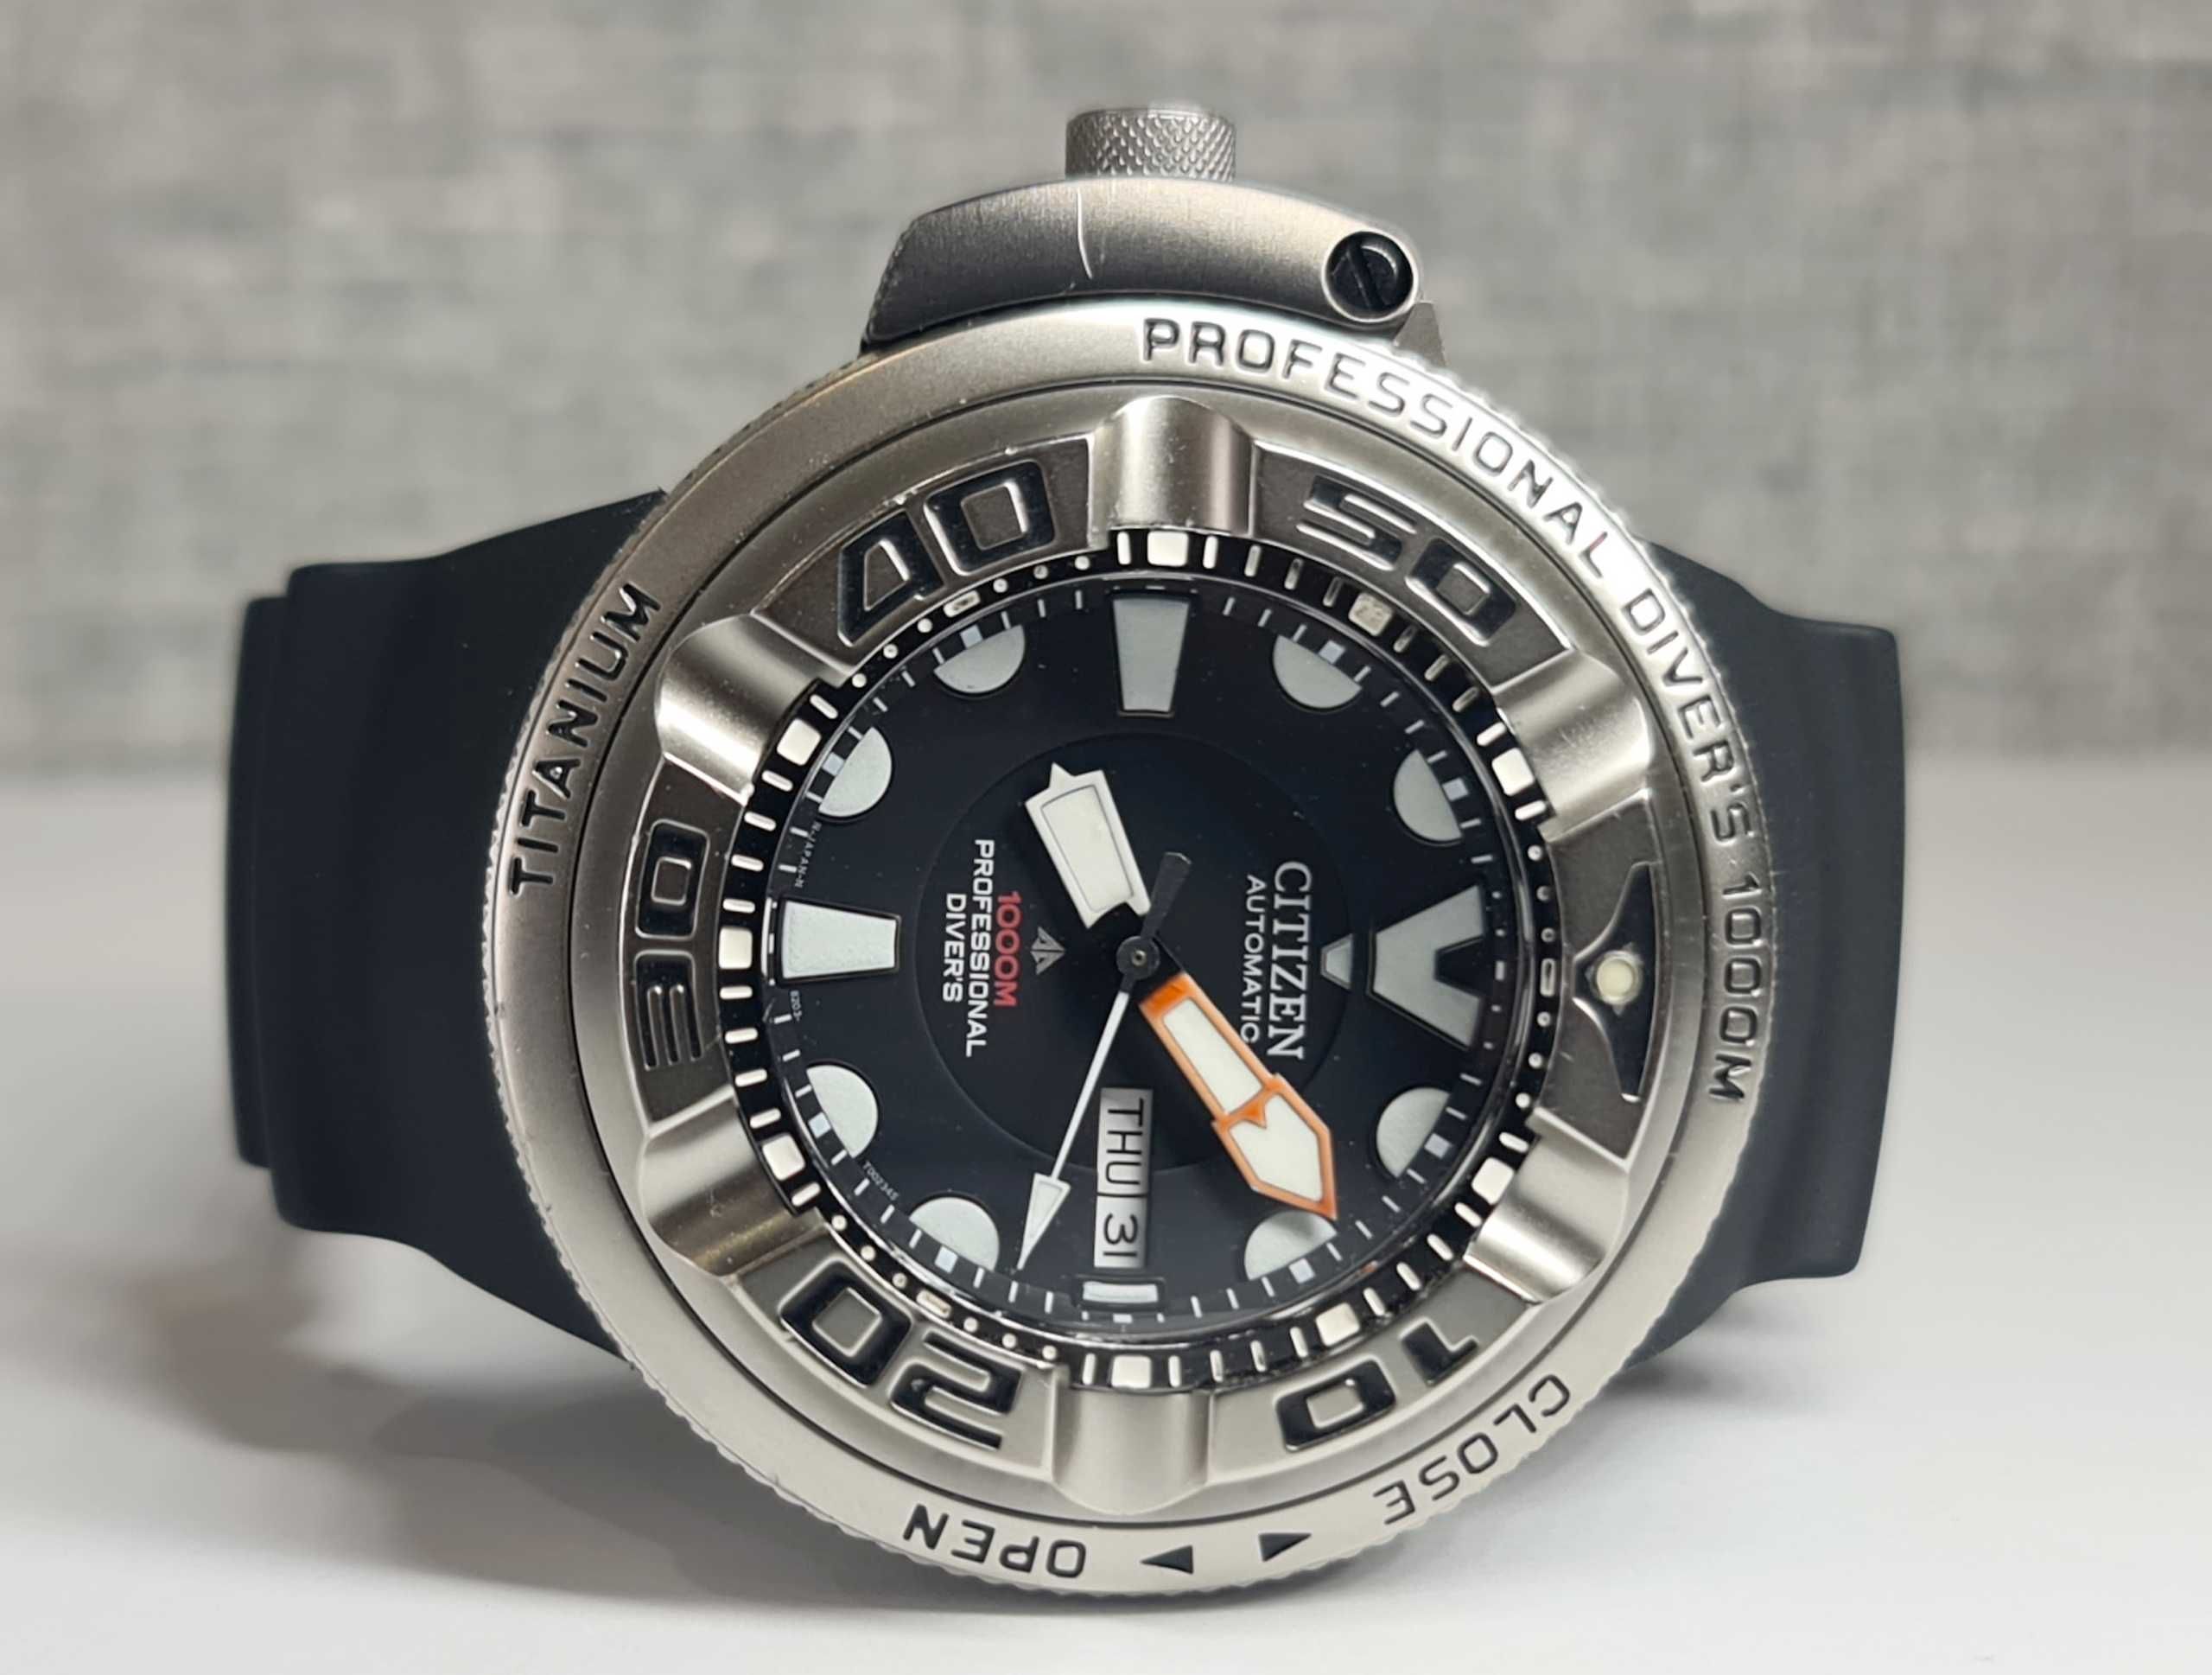 Чоловічий годинник часы Citizen Autozilla Automatic NH6930 1000m Diver